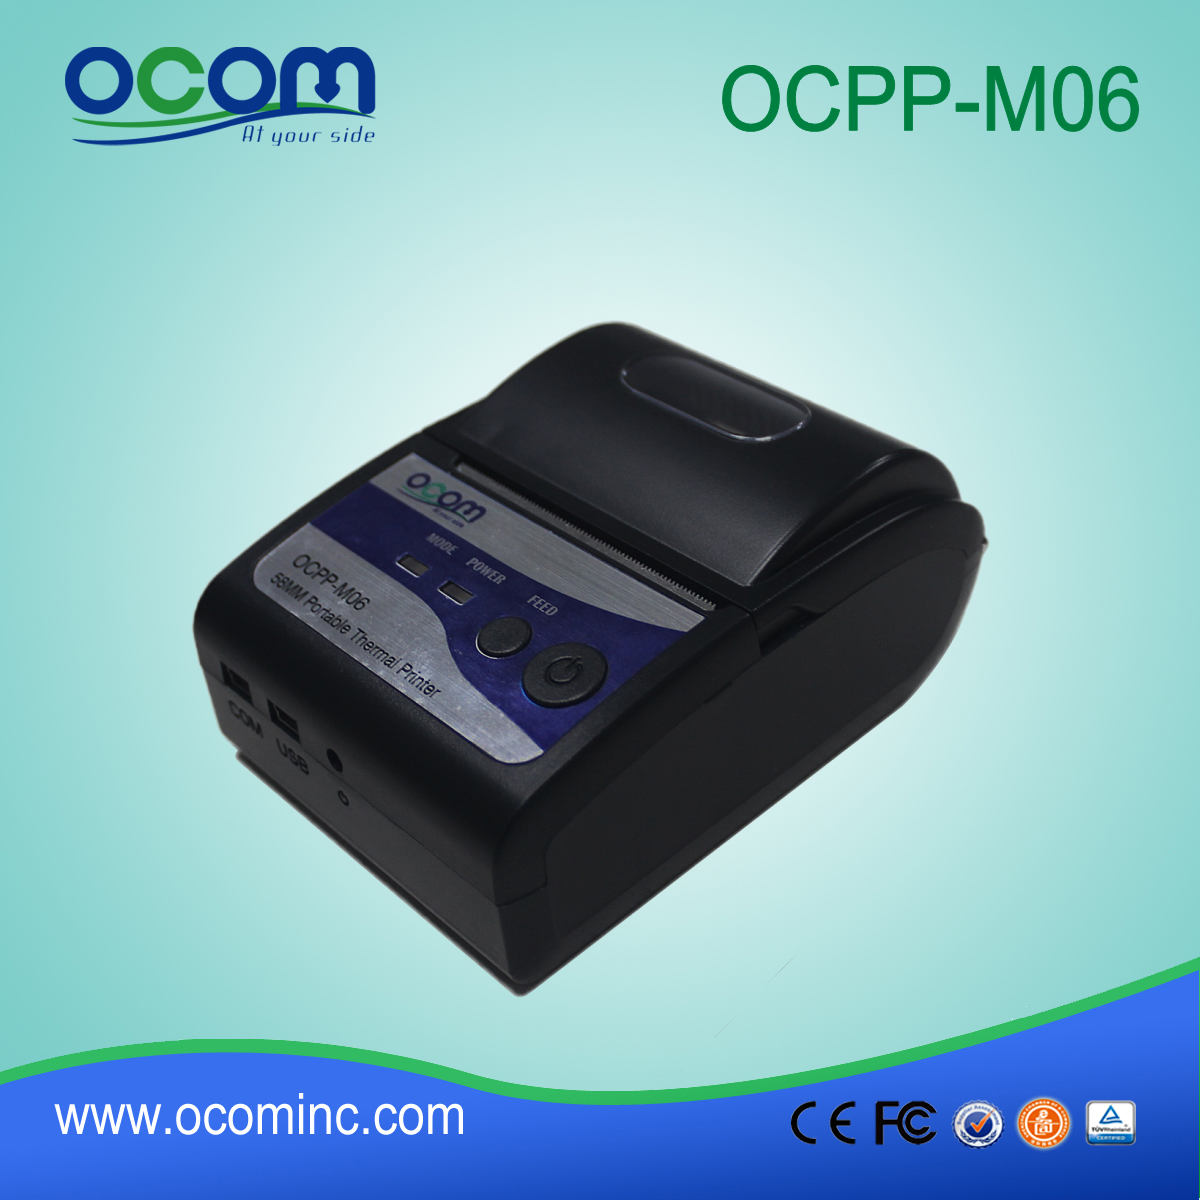 OCPP-M06: Chinese cheapeast OCOM 58mm pos printer, 58mm pos printer